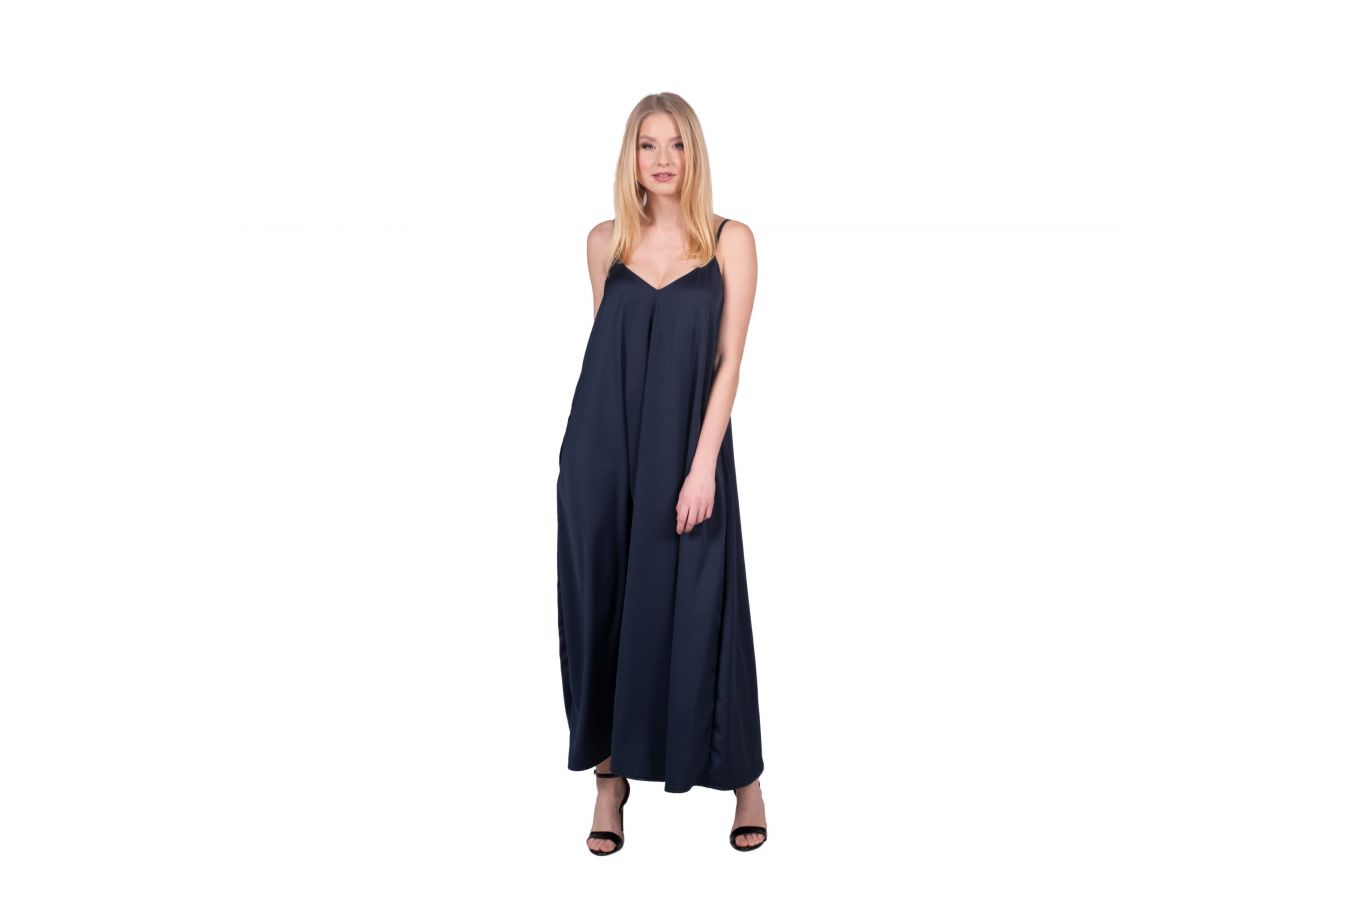 Oversize letní šaty značky Jamie Collection jako must have letošního léta